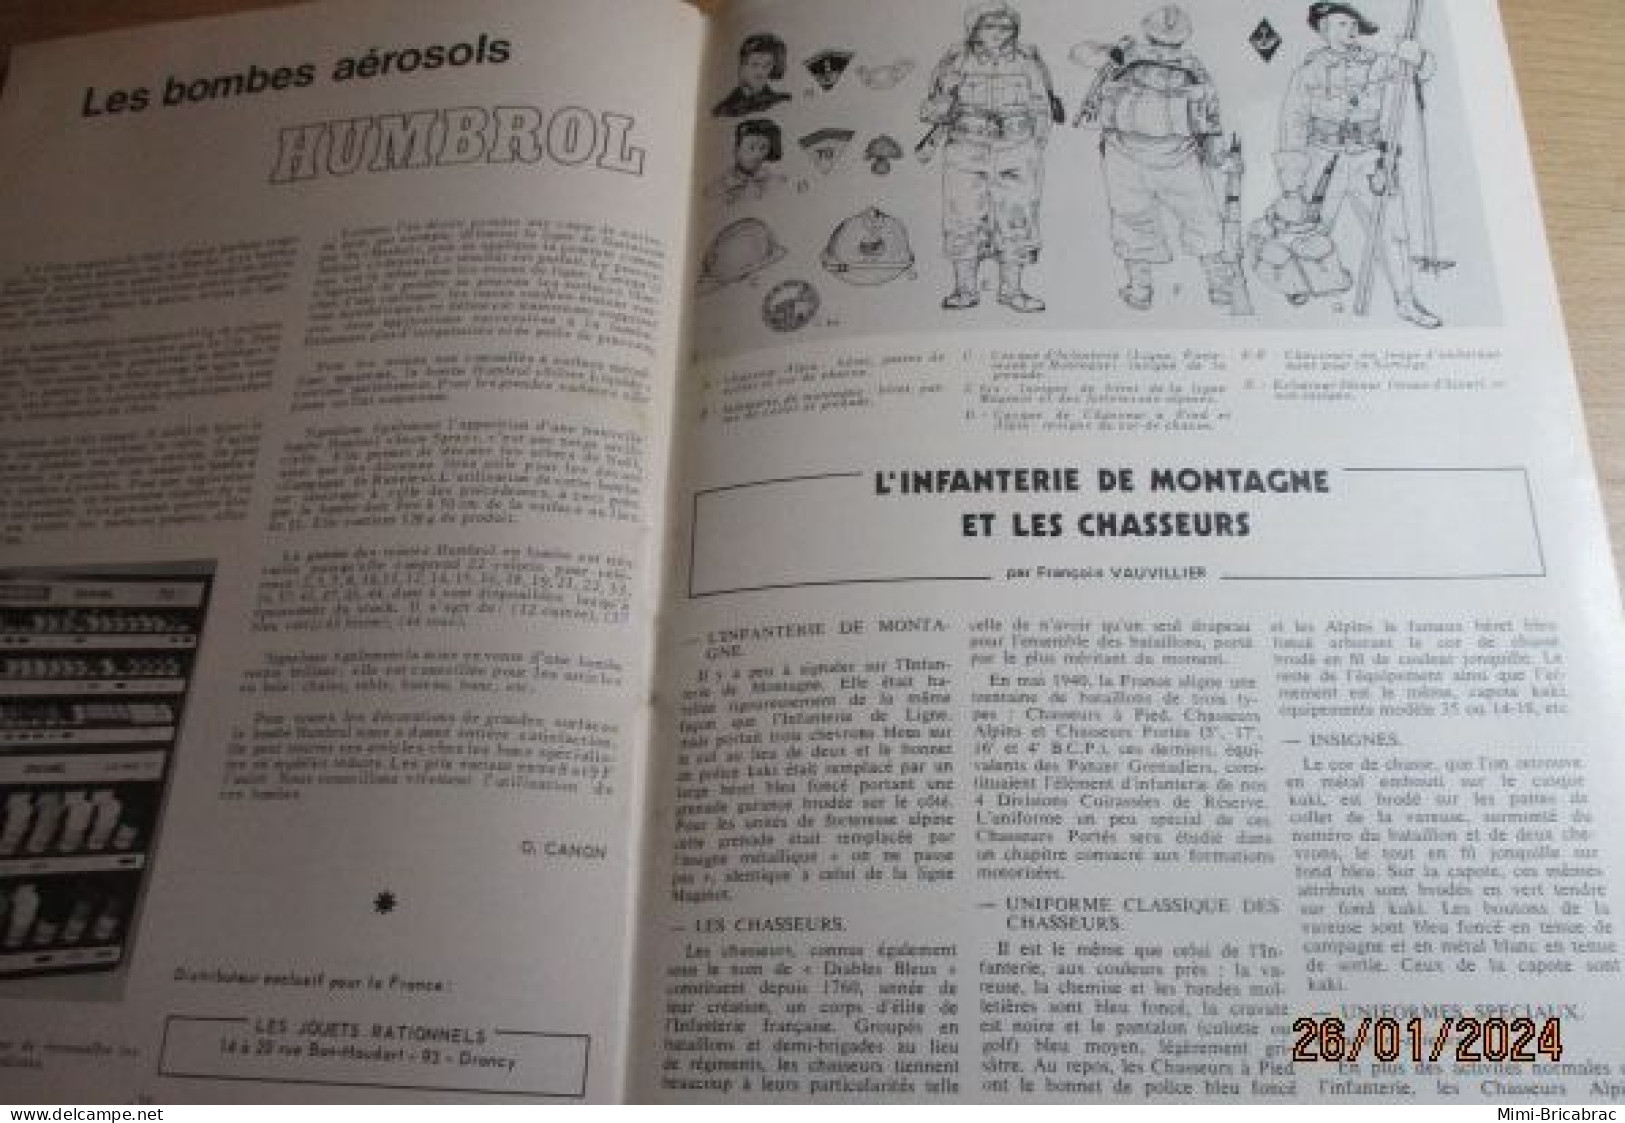 CAGI 1e Revue de maquettisme plastique années 60/70 : MPM n°20 de 1972 très bon état ! Sommaire en photo 2 ou 3